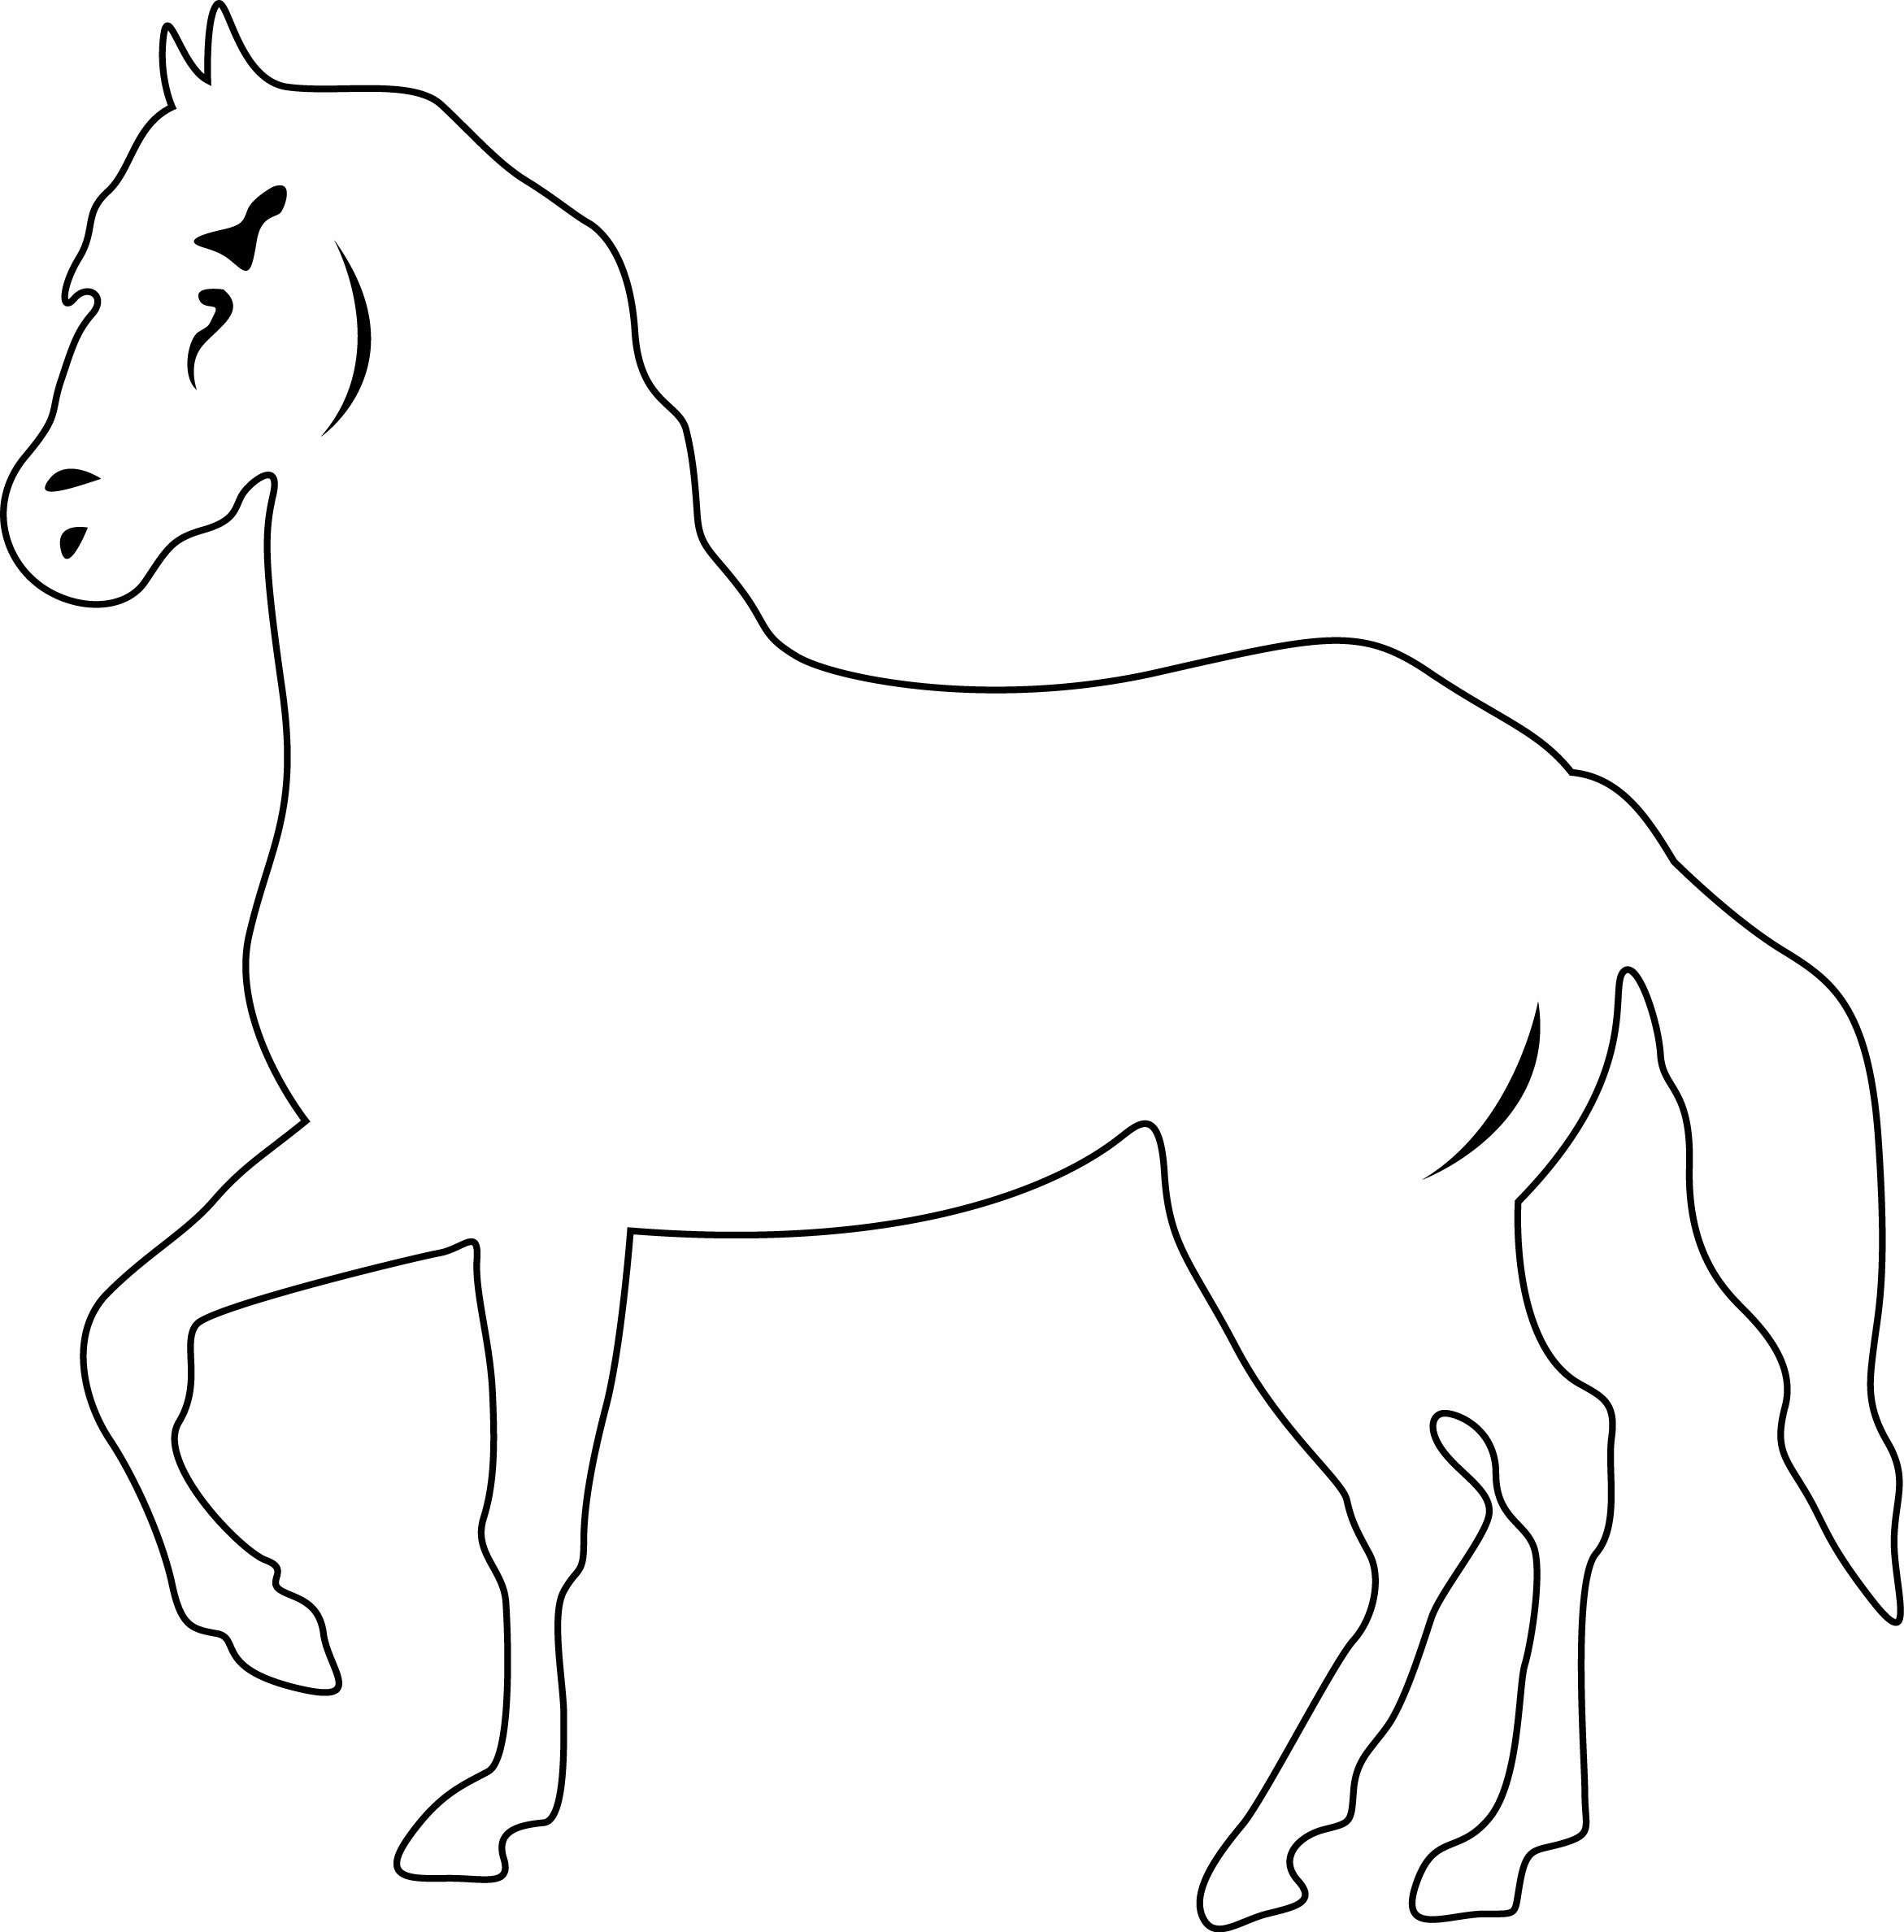 Лошадка трафарет. Трафарет лошади для рисования. Лошадь трафарет для вырезания. Шаблон лошади для рисования.